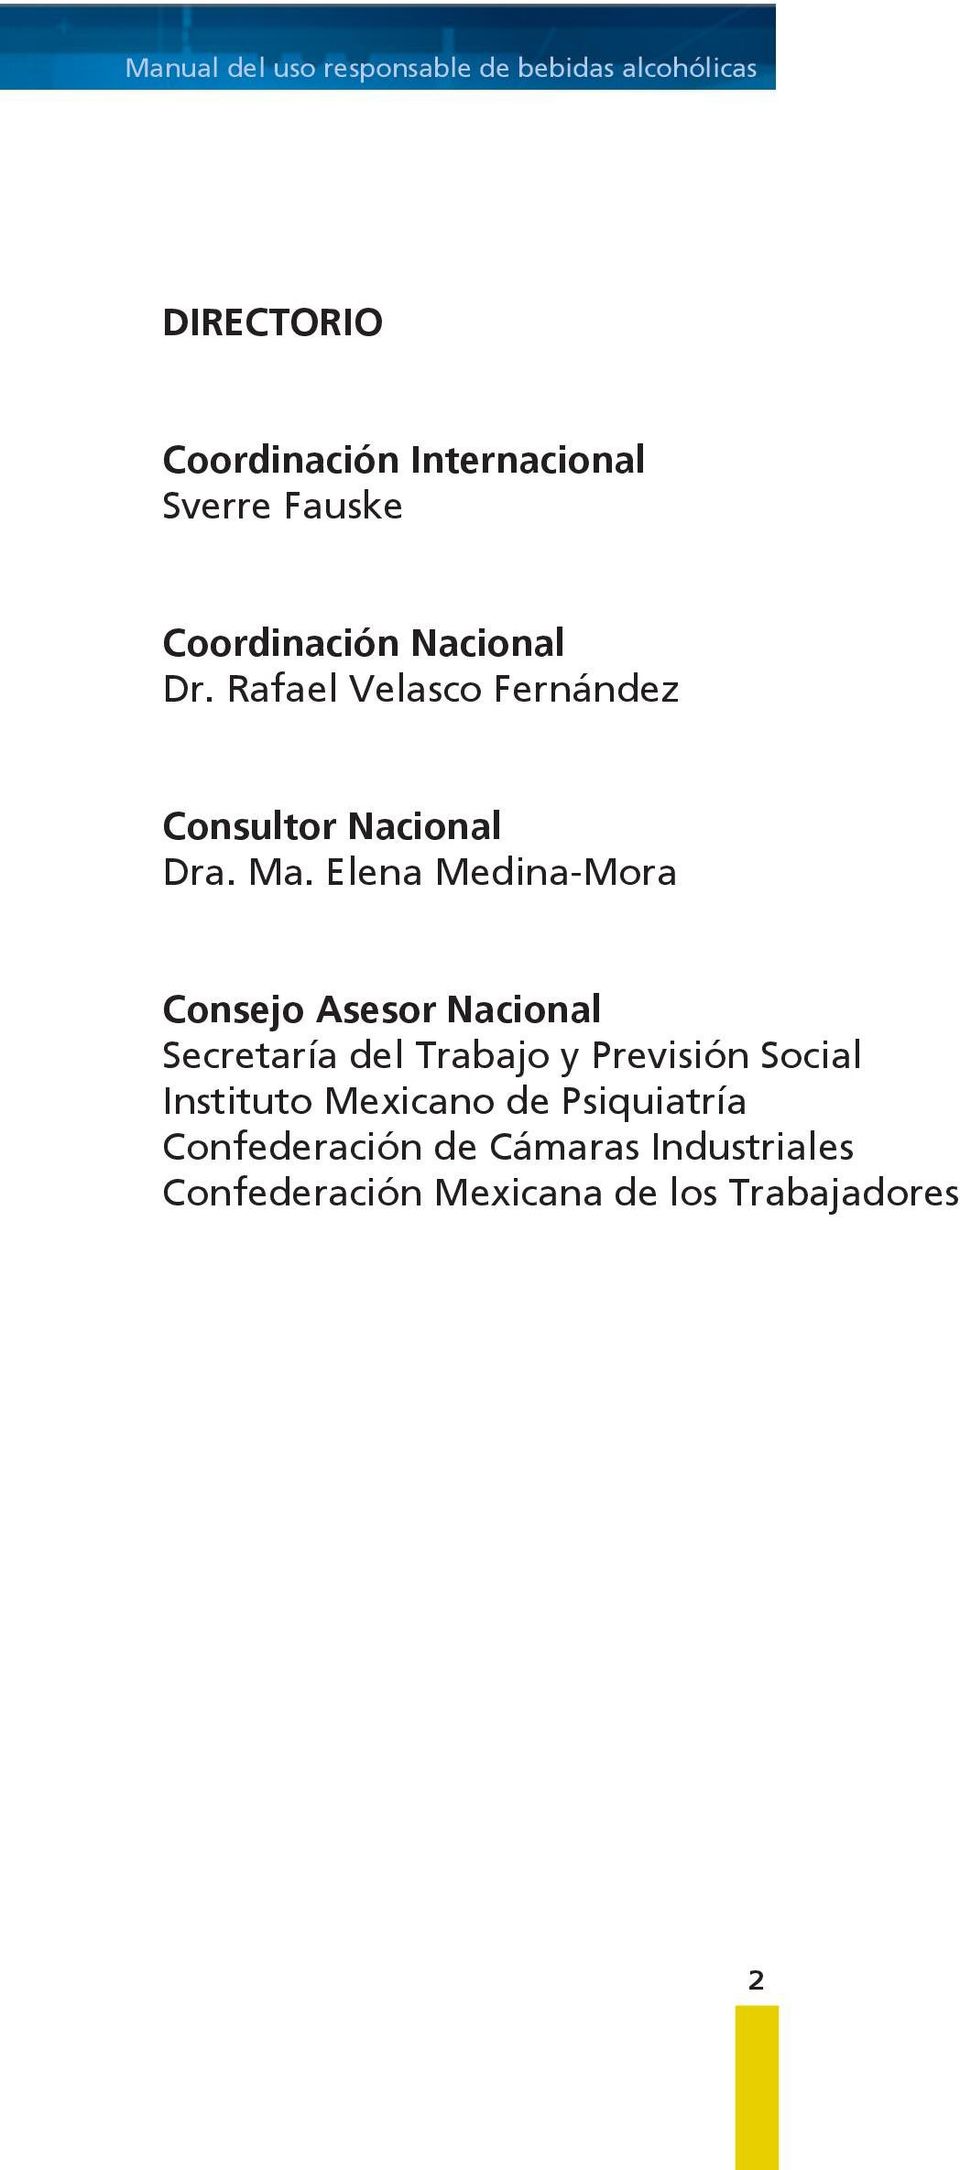 Elena Medina-Mora Consejo Asesor Nacional Secretaría del Trabajo y Previsión Social Instituto